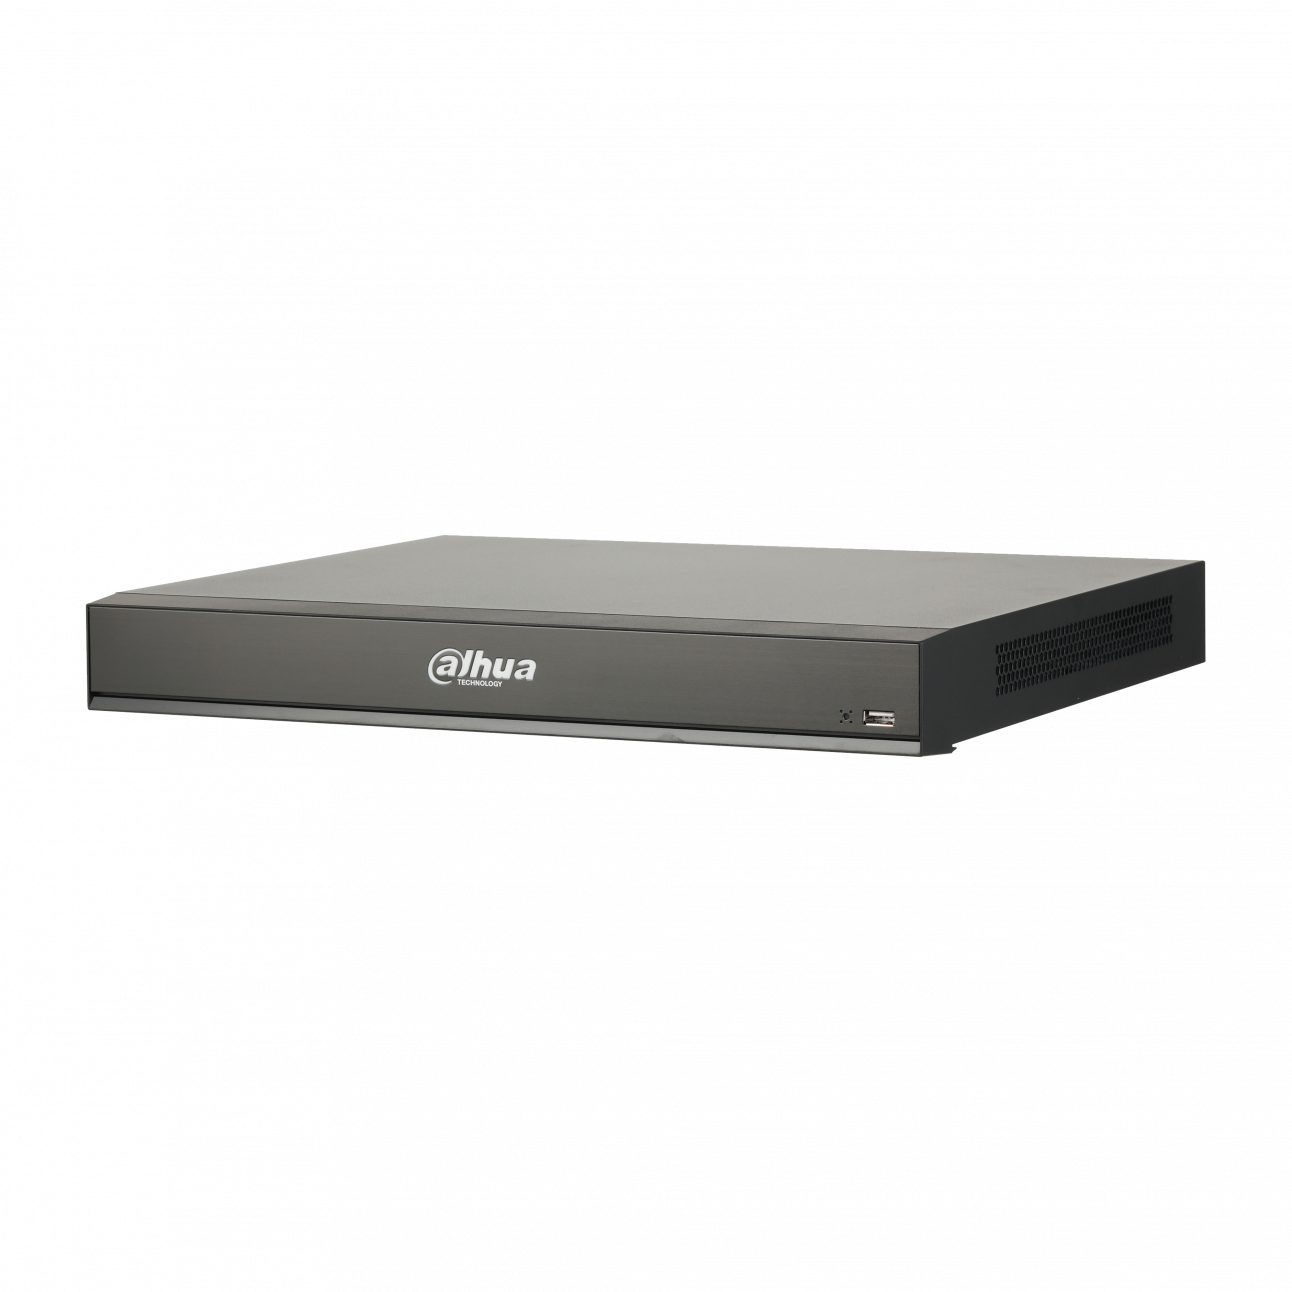 IP Видеорегистратор Dahua DHI-NVR5216-8P-I 16-и канальный 4K, 8 PoE портов, до 16Мп, 2 HDD до 8Тб, HDMI, VGA, 1 порт USB2.0, 1 порт USB3.0